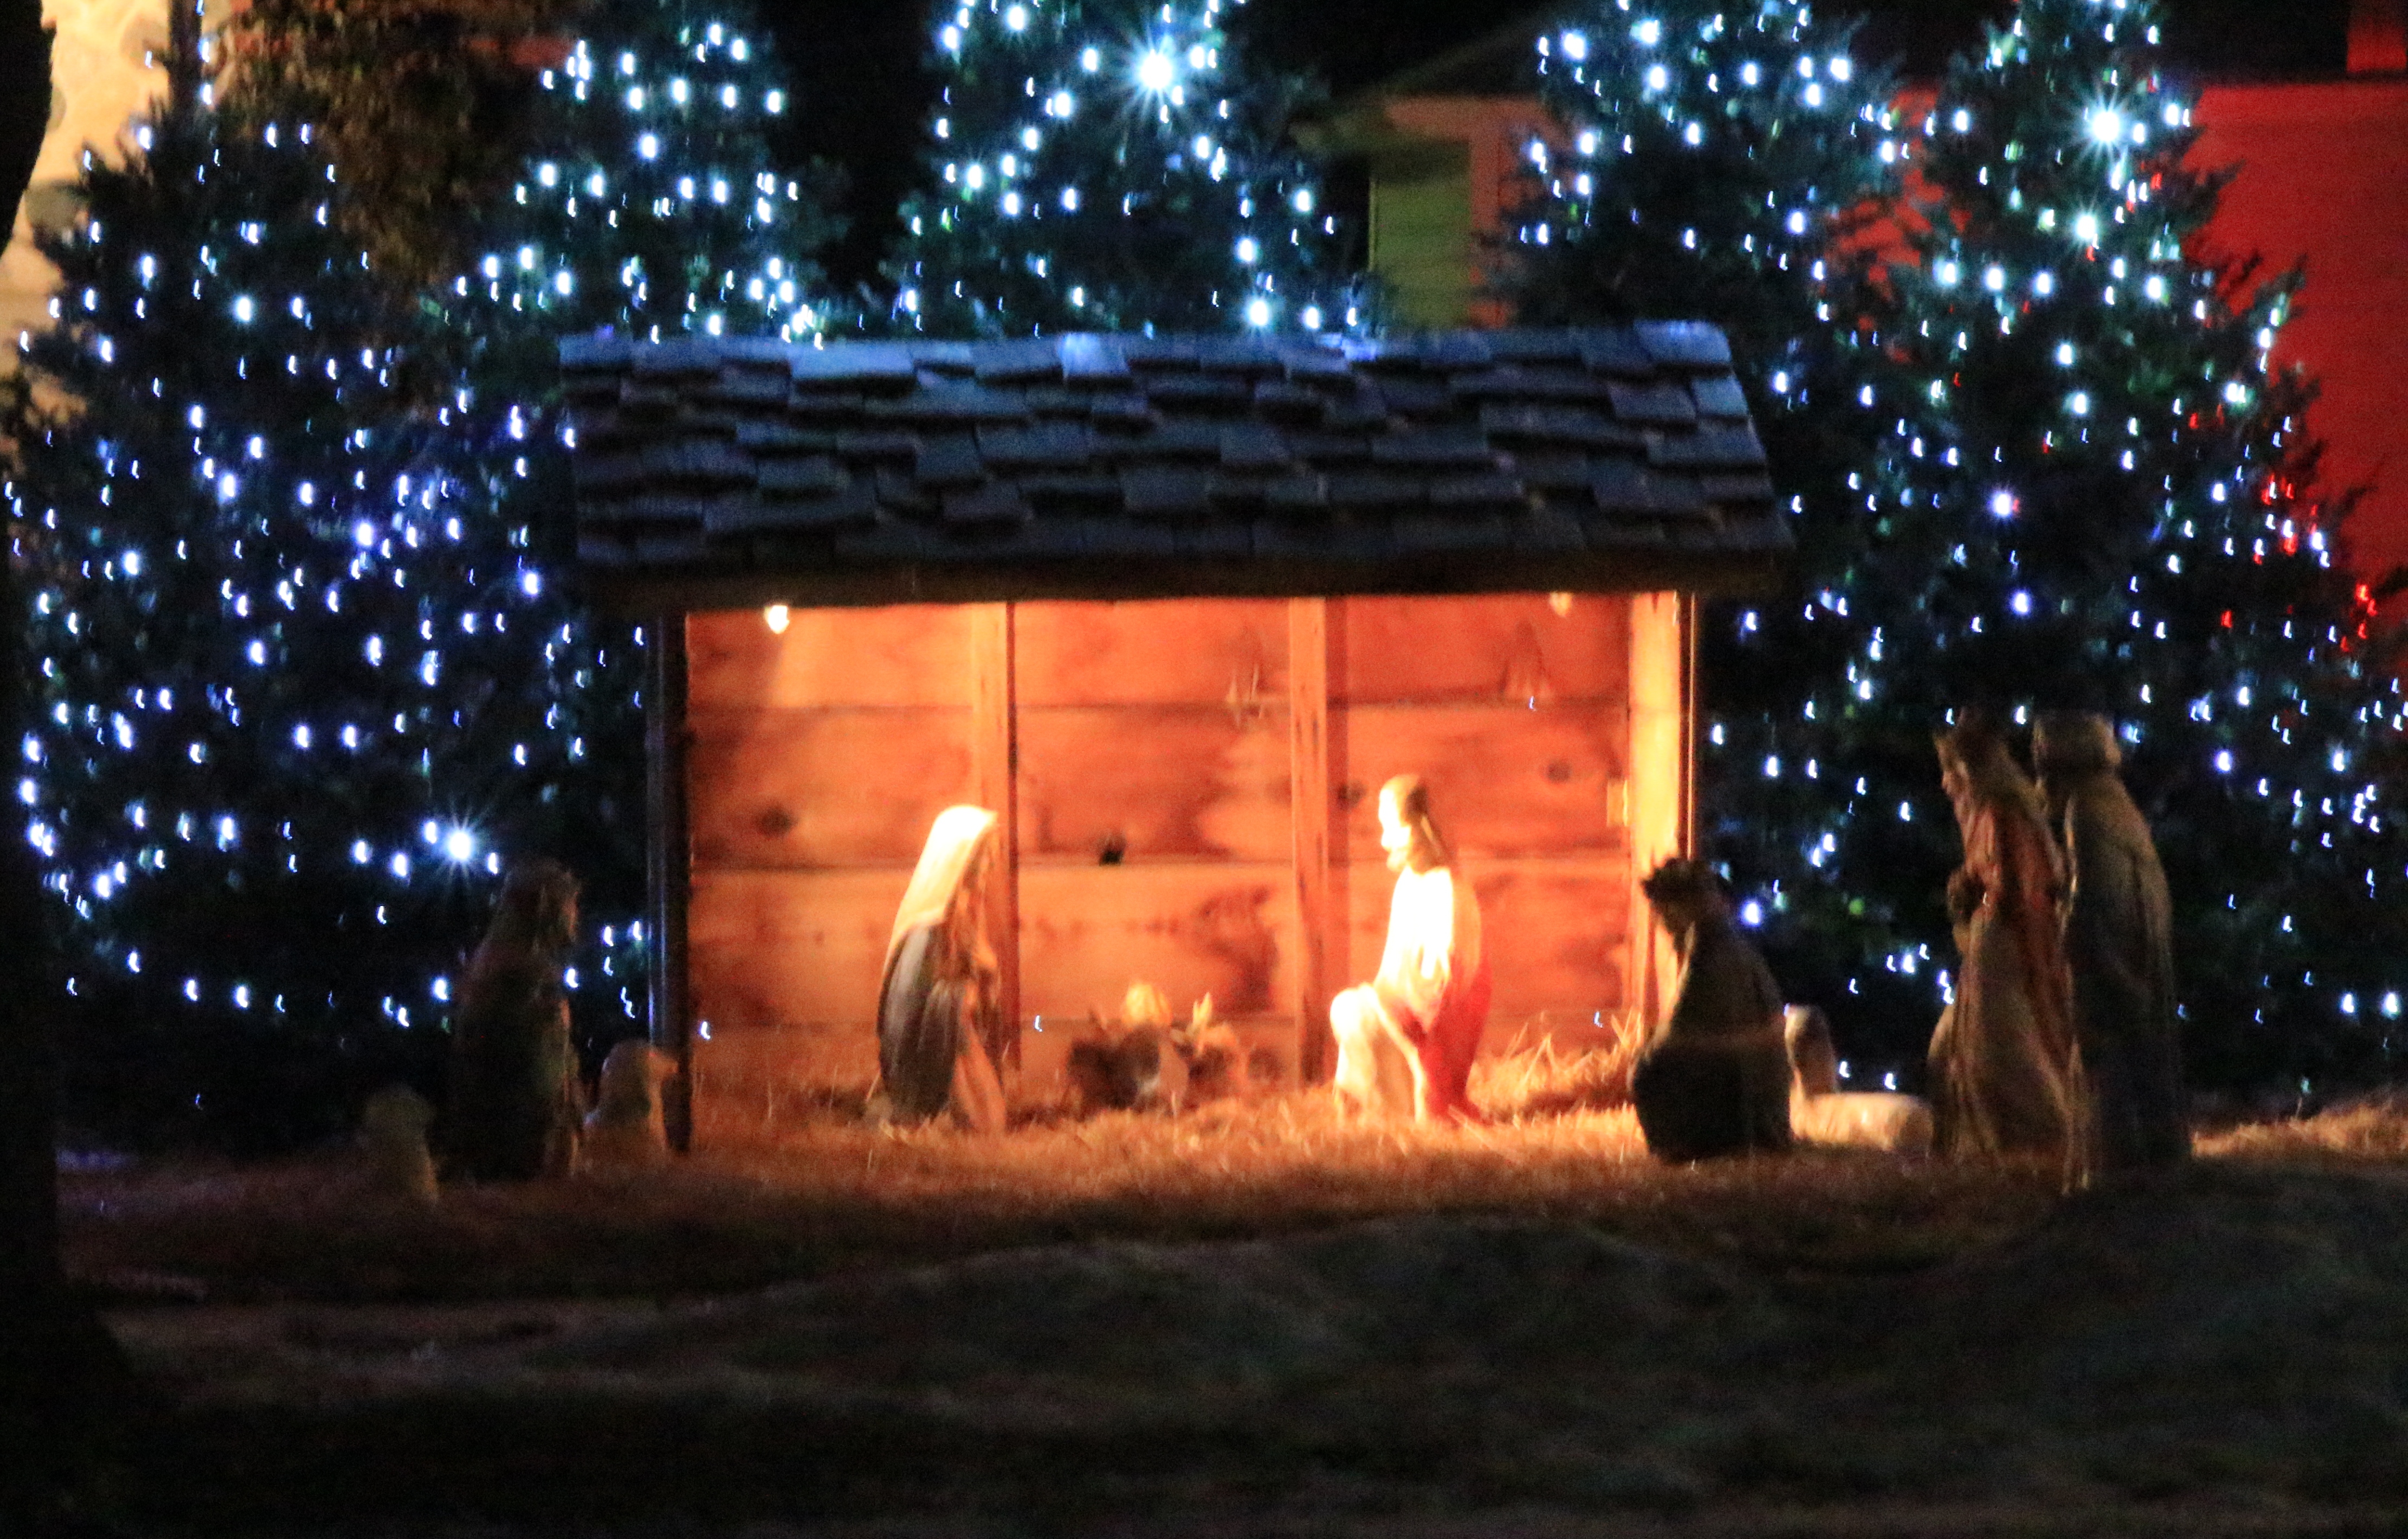 Nativity at St. Mary's